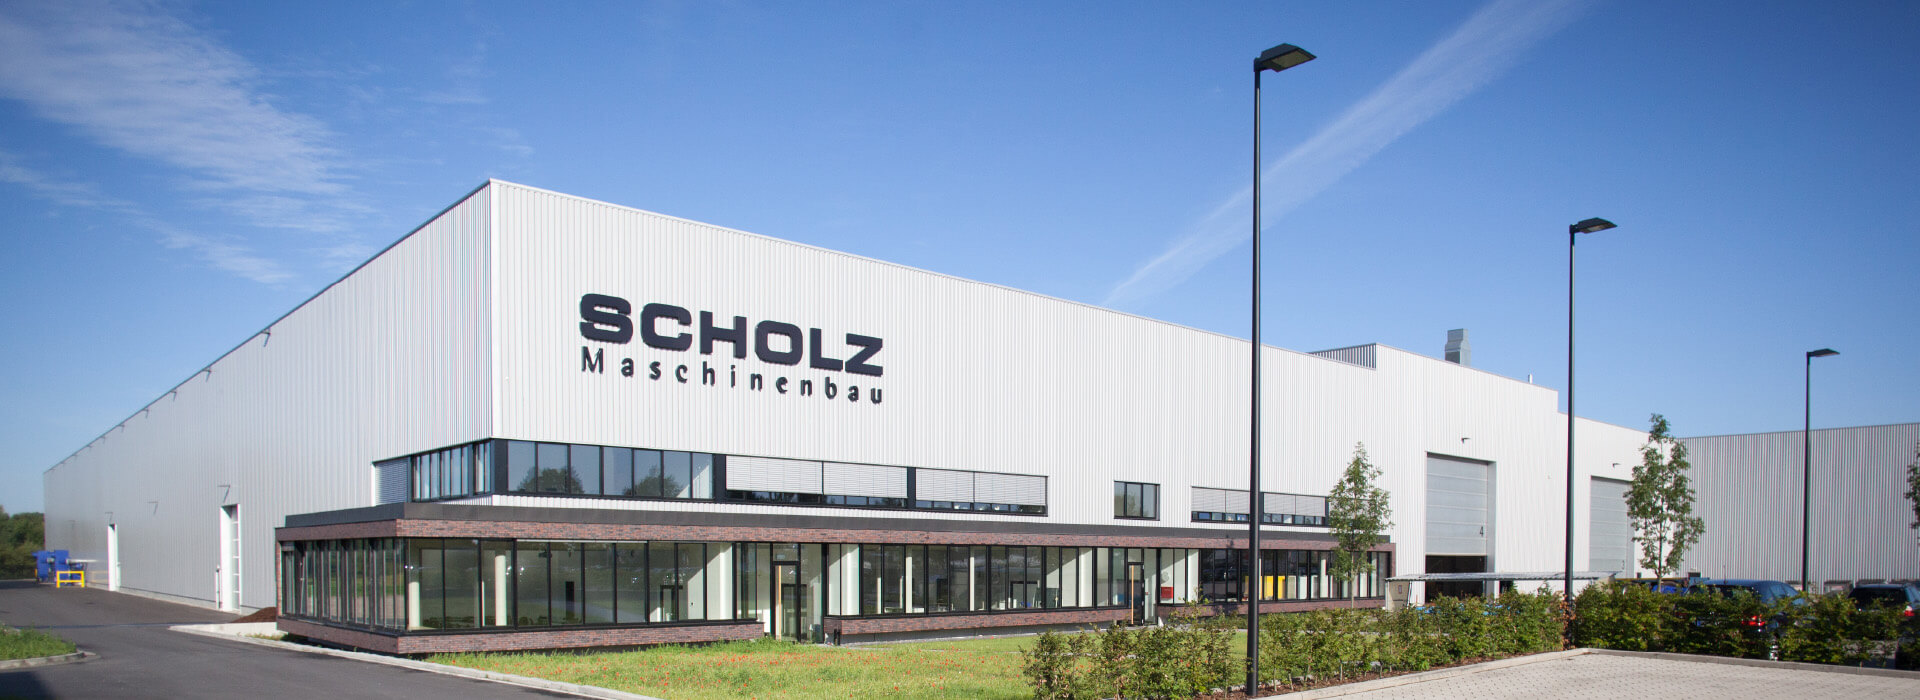 Firmengebäude der Firma Scholz Maschinenbau